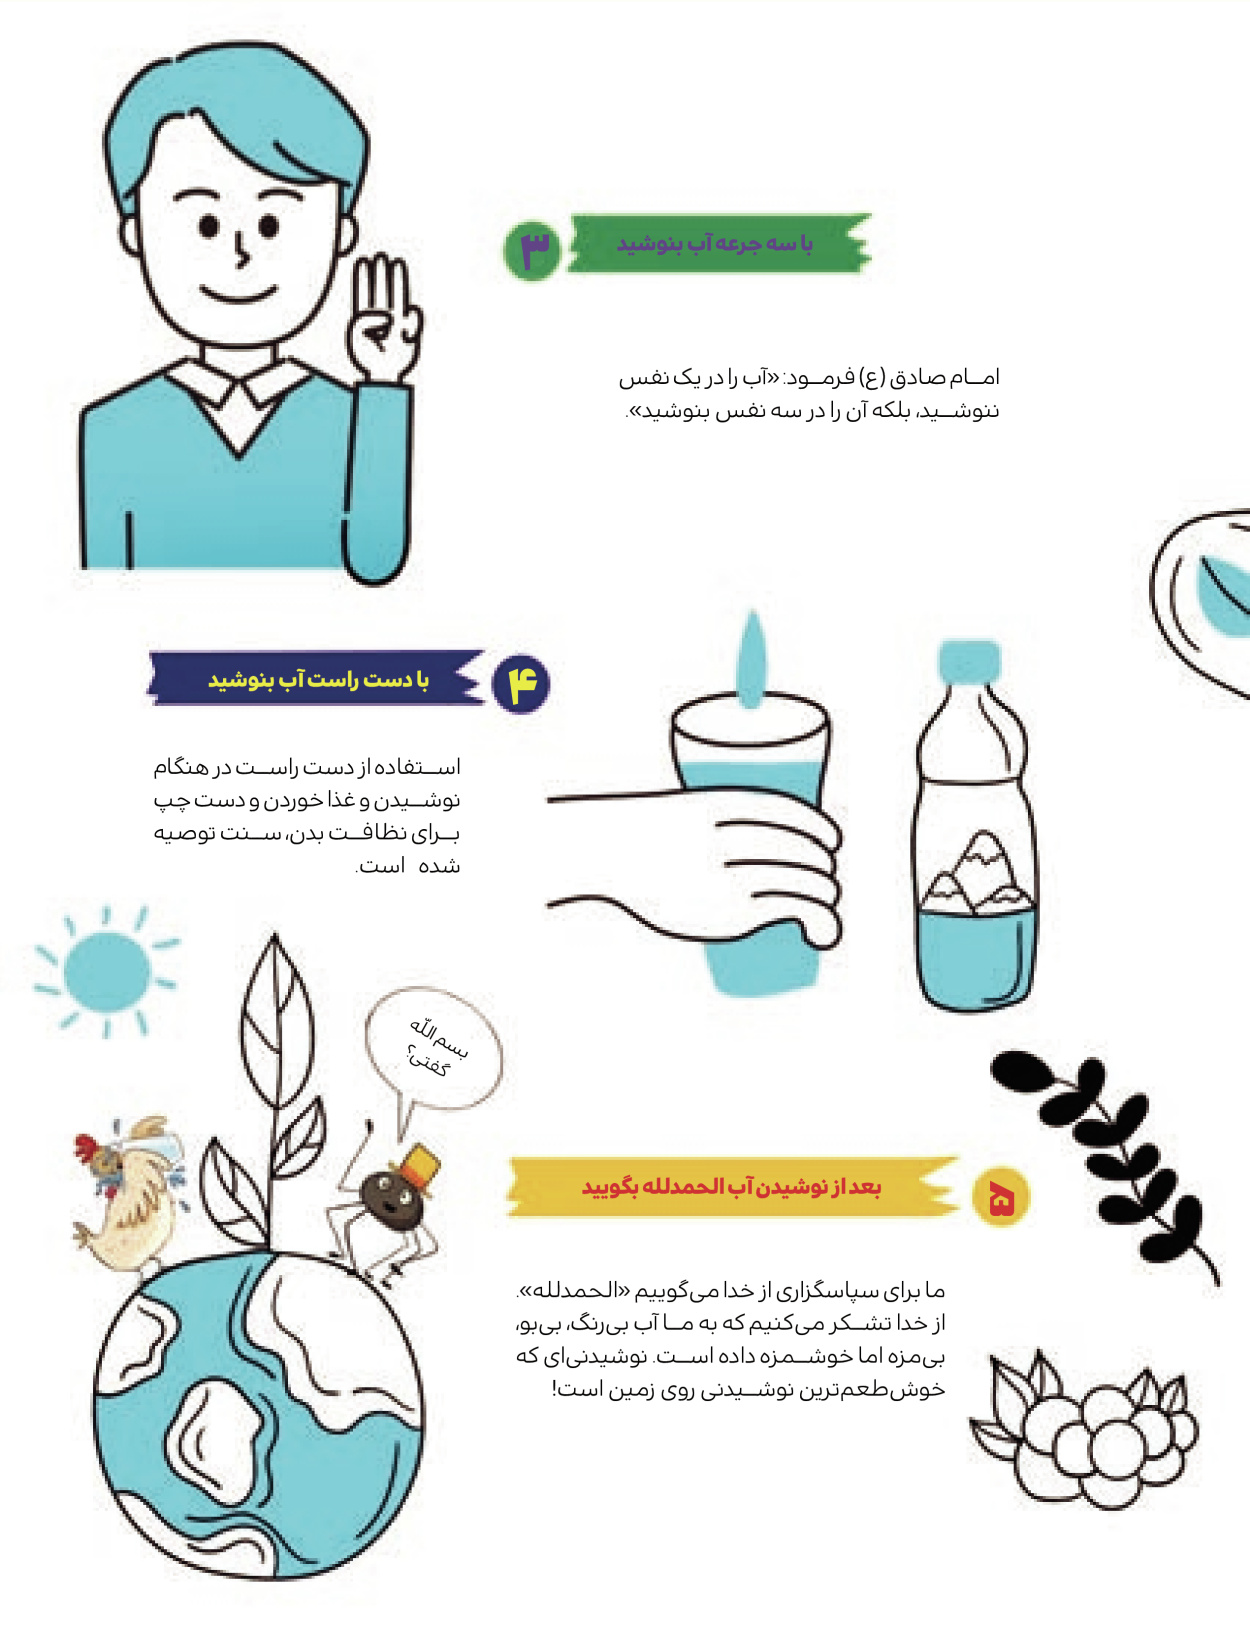 ماه نامه بچه های ایران - شماره یک - ۰۷ شهریور ۱۴۰۲ - صفحه ۵۵